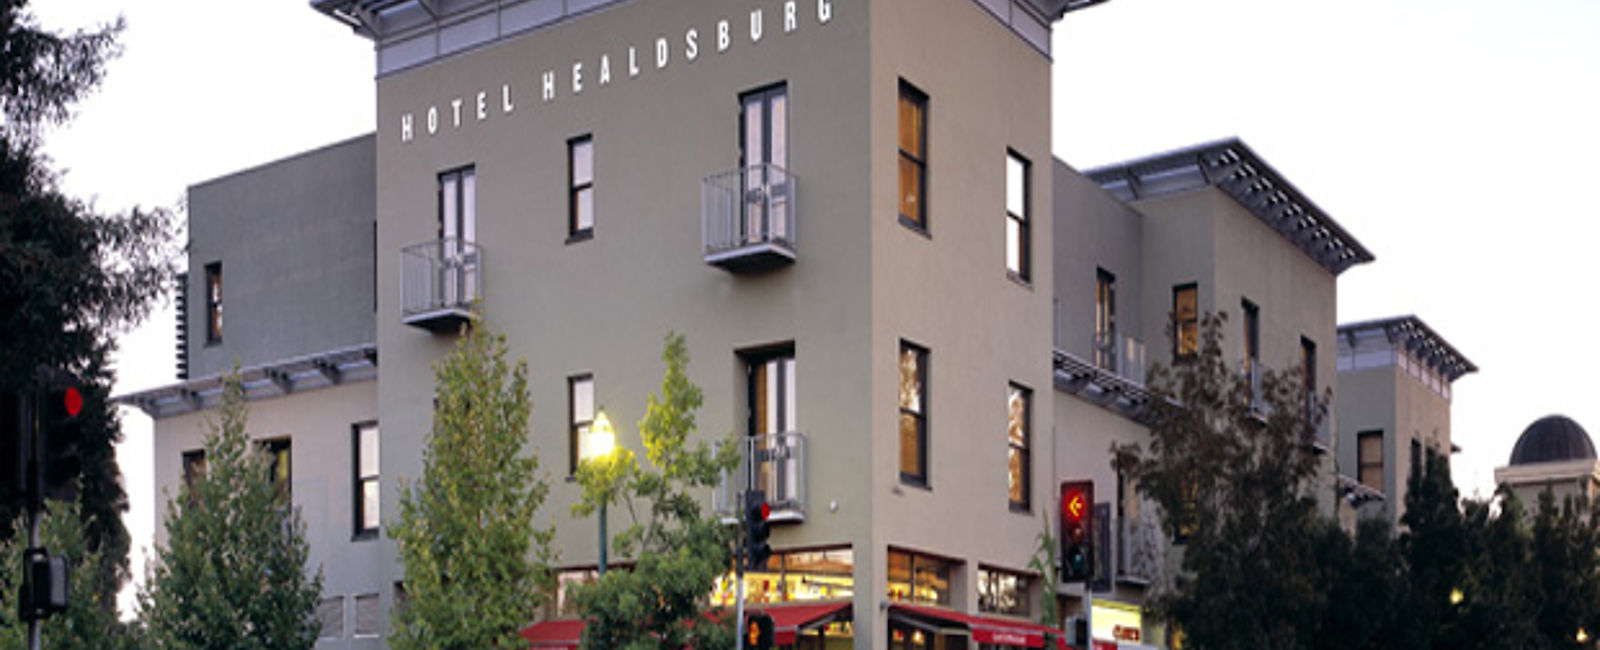 HOTEL TIPPS
 Hotel Healdsburg 
 Eines der besten Hotels in den USA 